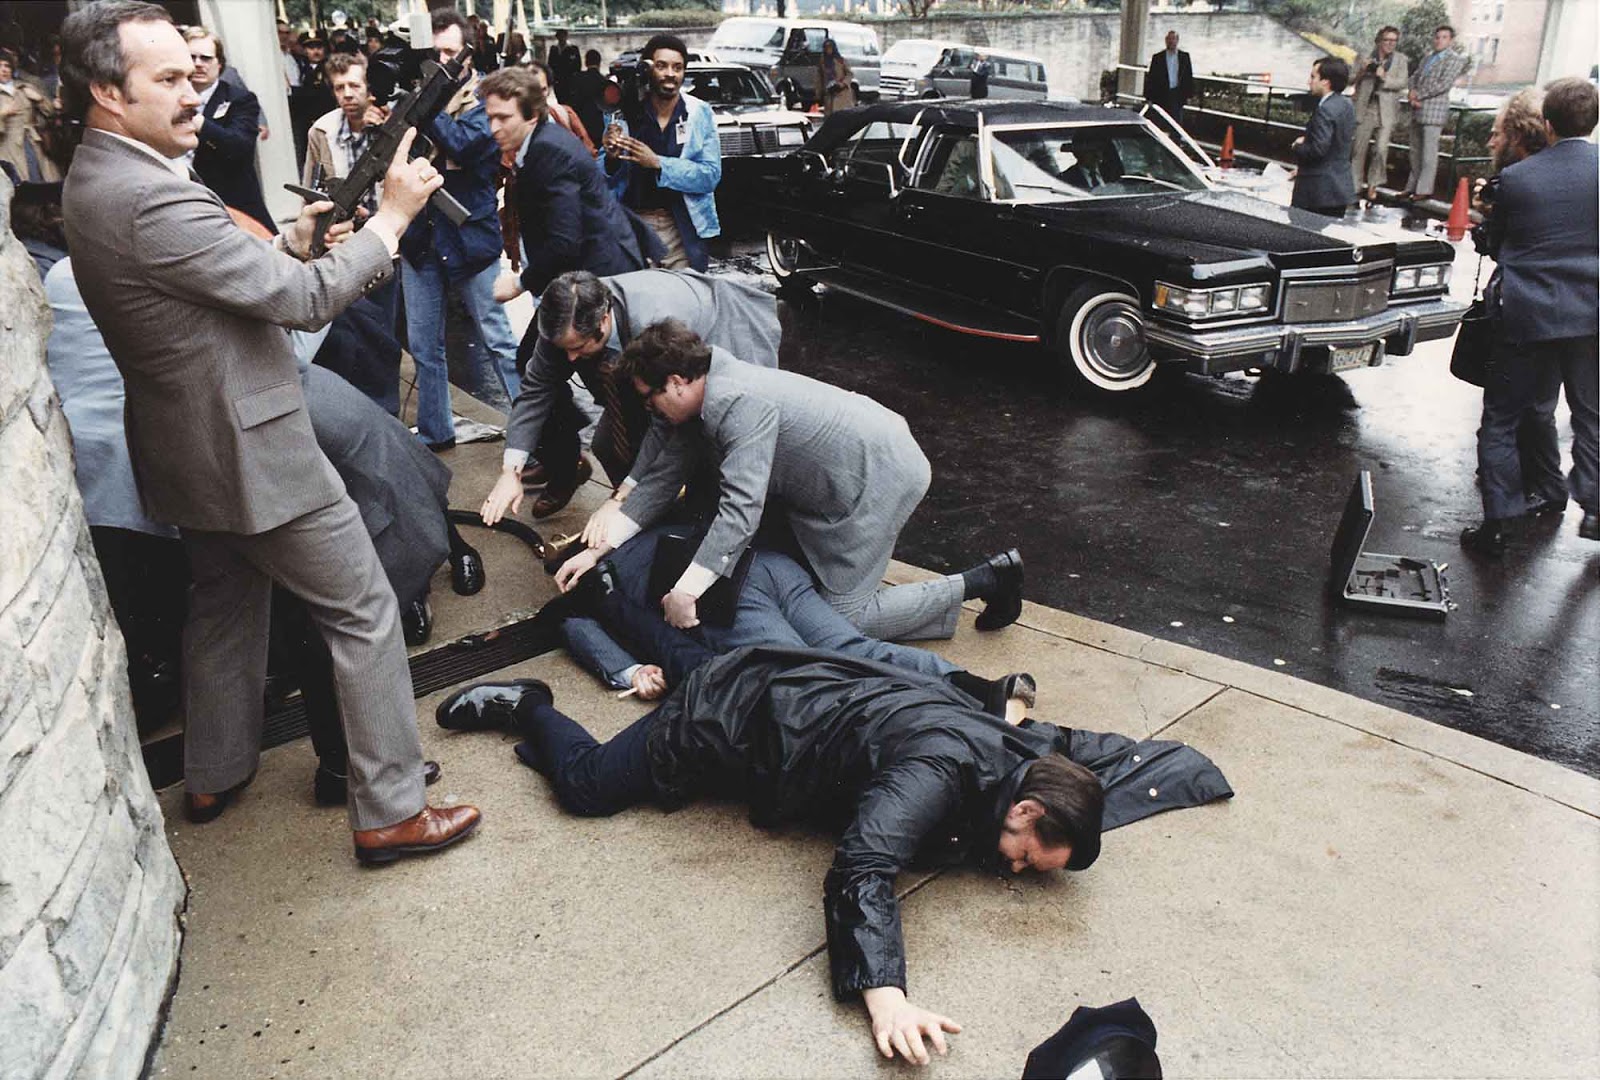  attempted assassination of President Reagan